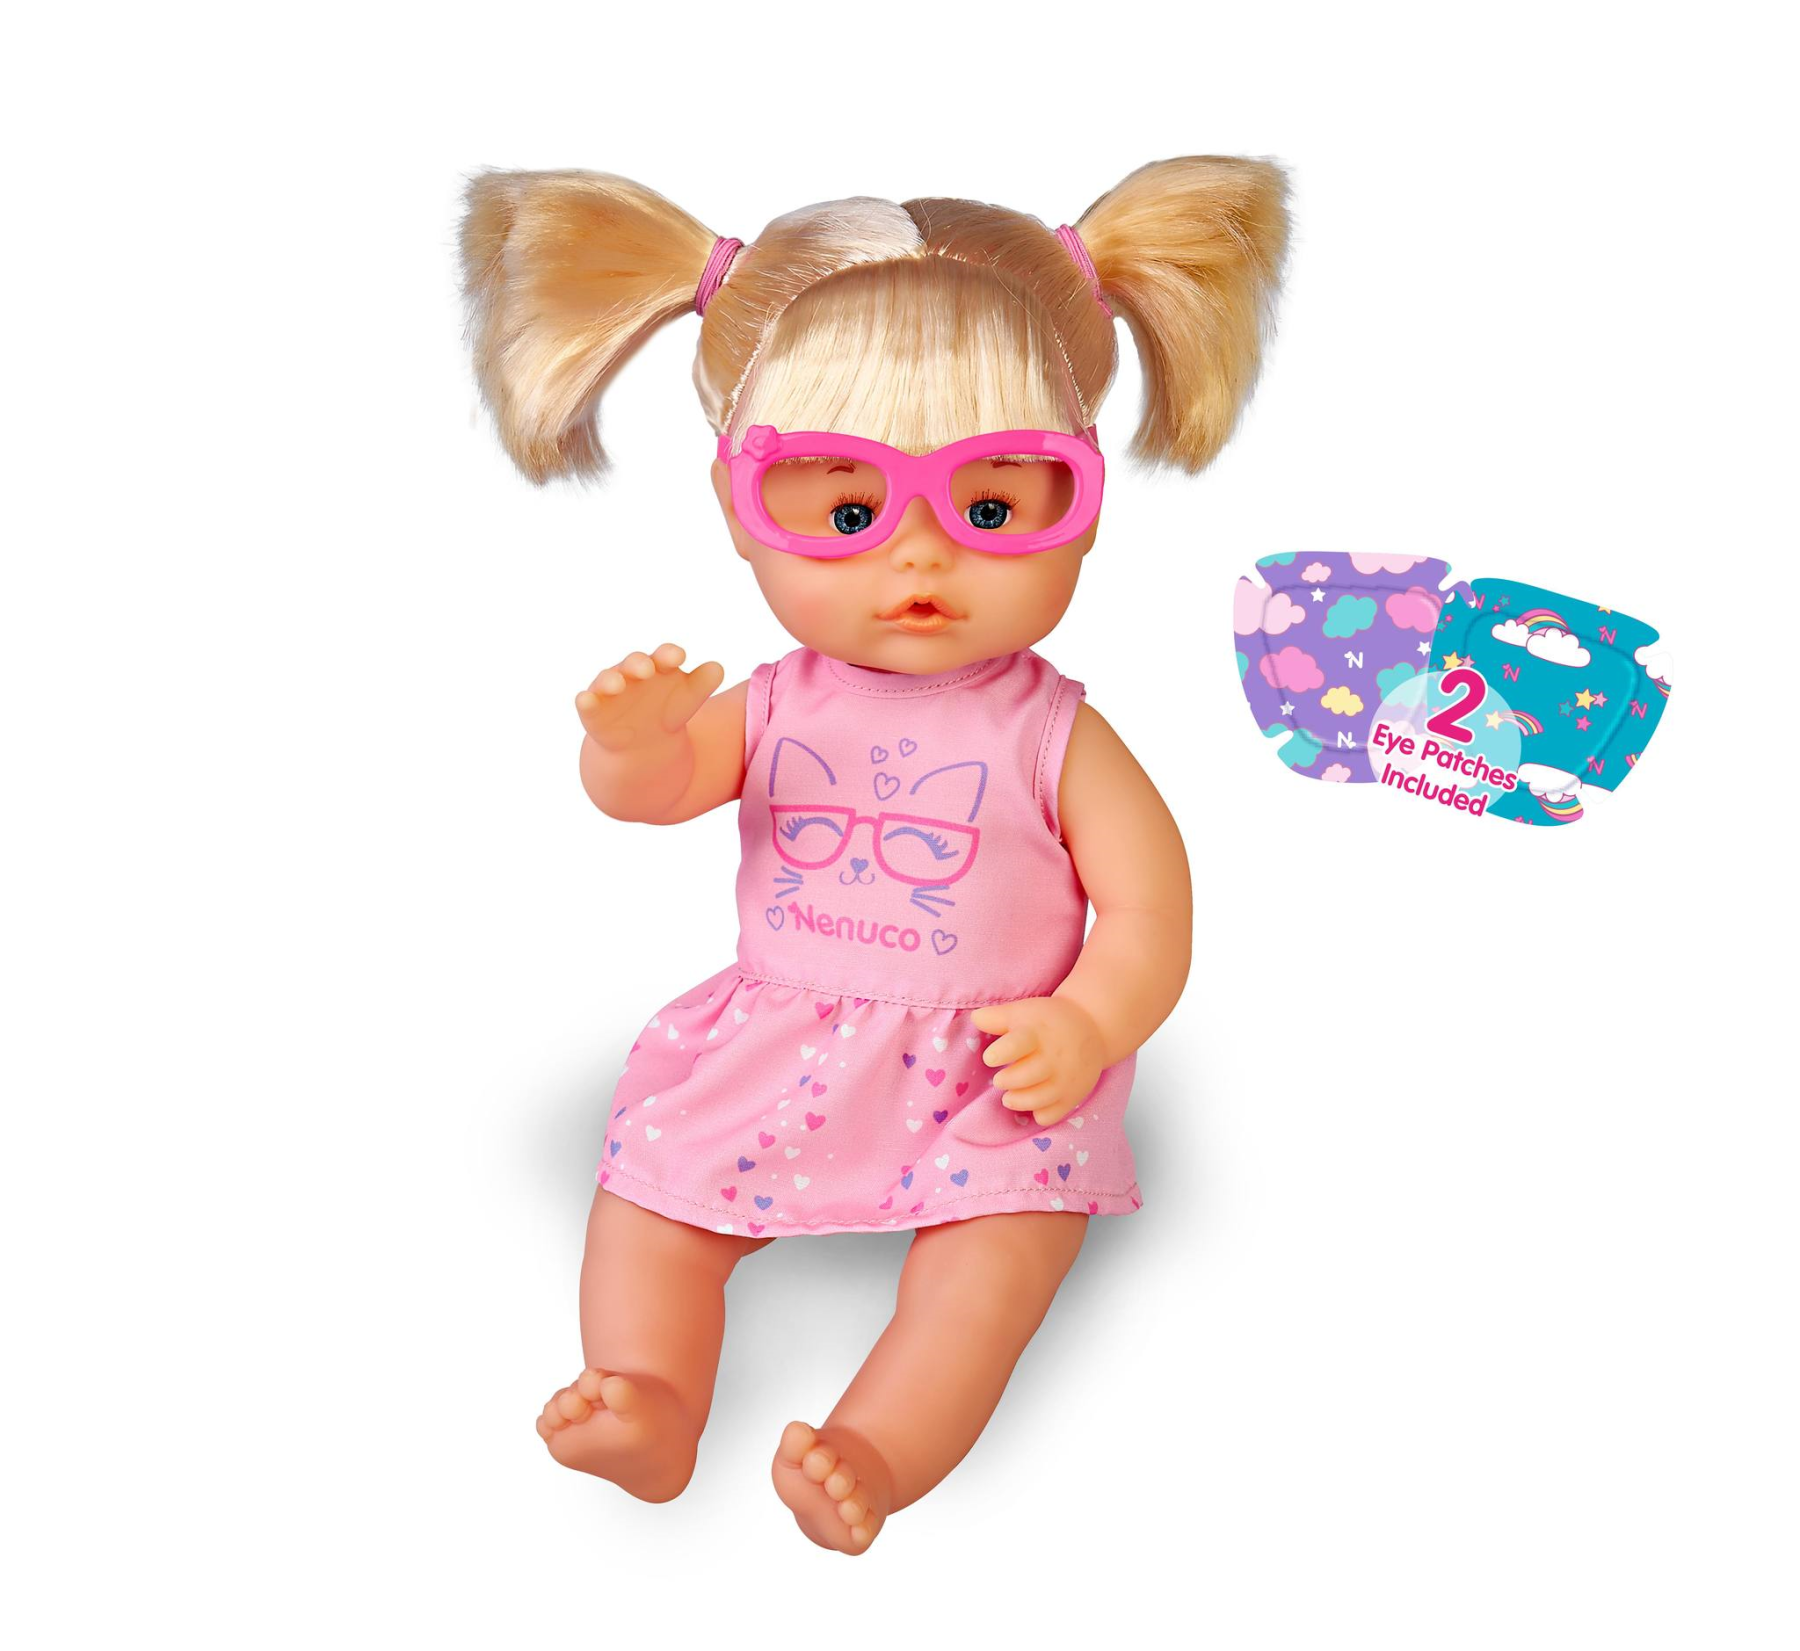 Nenuco occhiali, bambola 35 cm, corpo rigido, con occhiali rosa - NENUCO